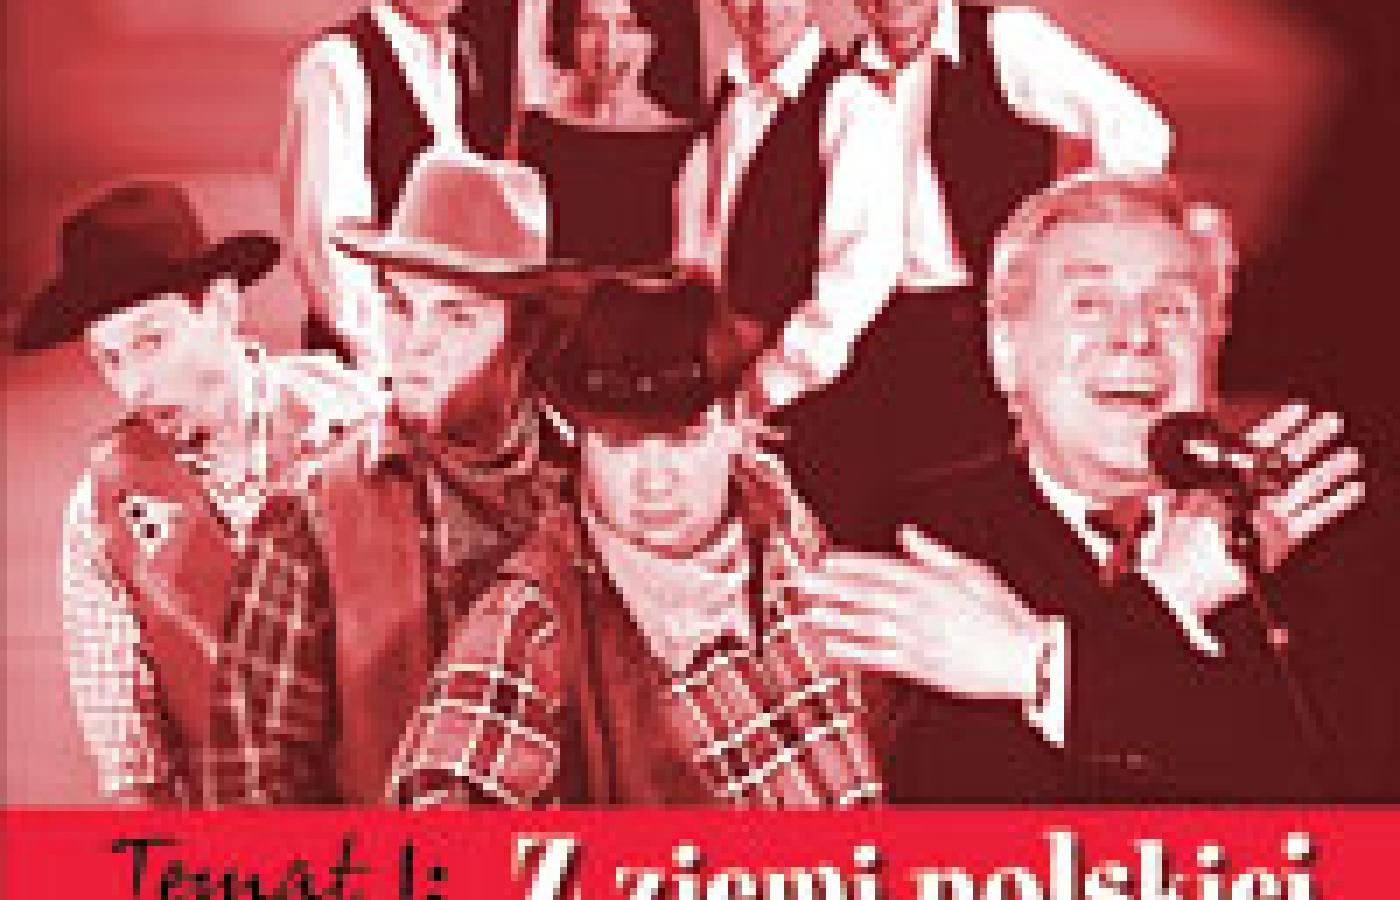 Tom I (Ko)lekcji polskich kabaretów.